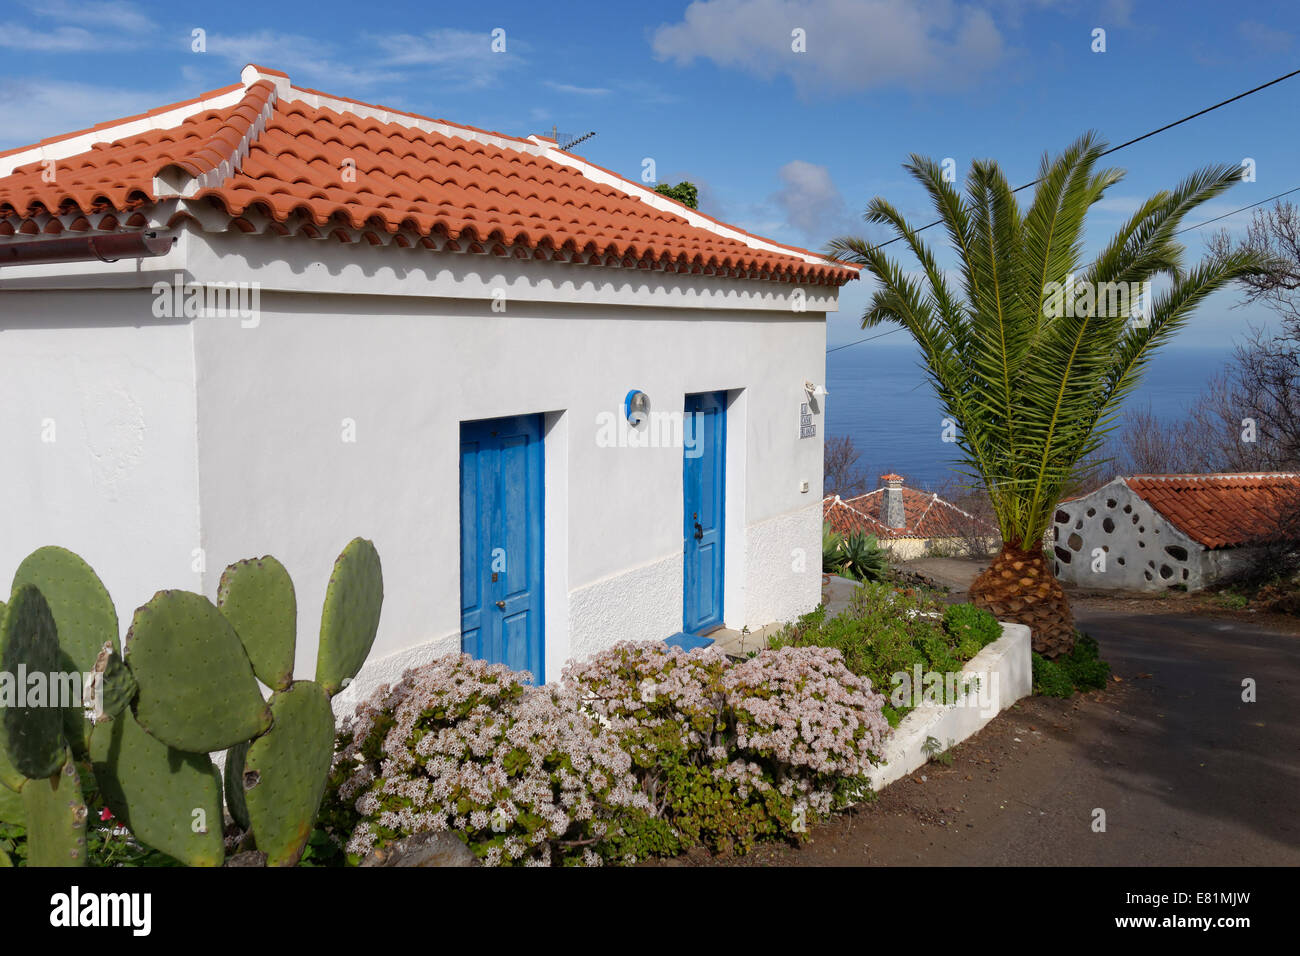 Petite maison avec la floraison des plantes de Jade (Crassula ovata), Las Tricias, La Palma, Canary Islands, Spain Banque D'Images